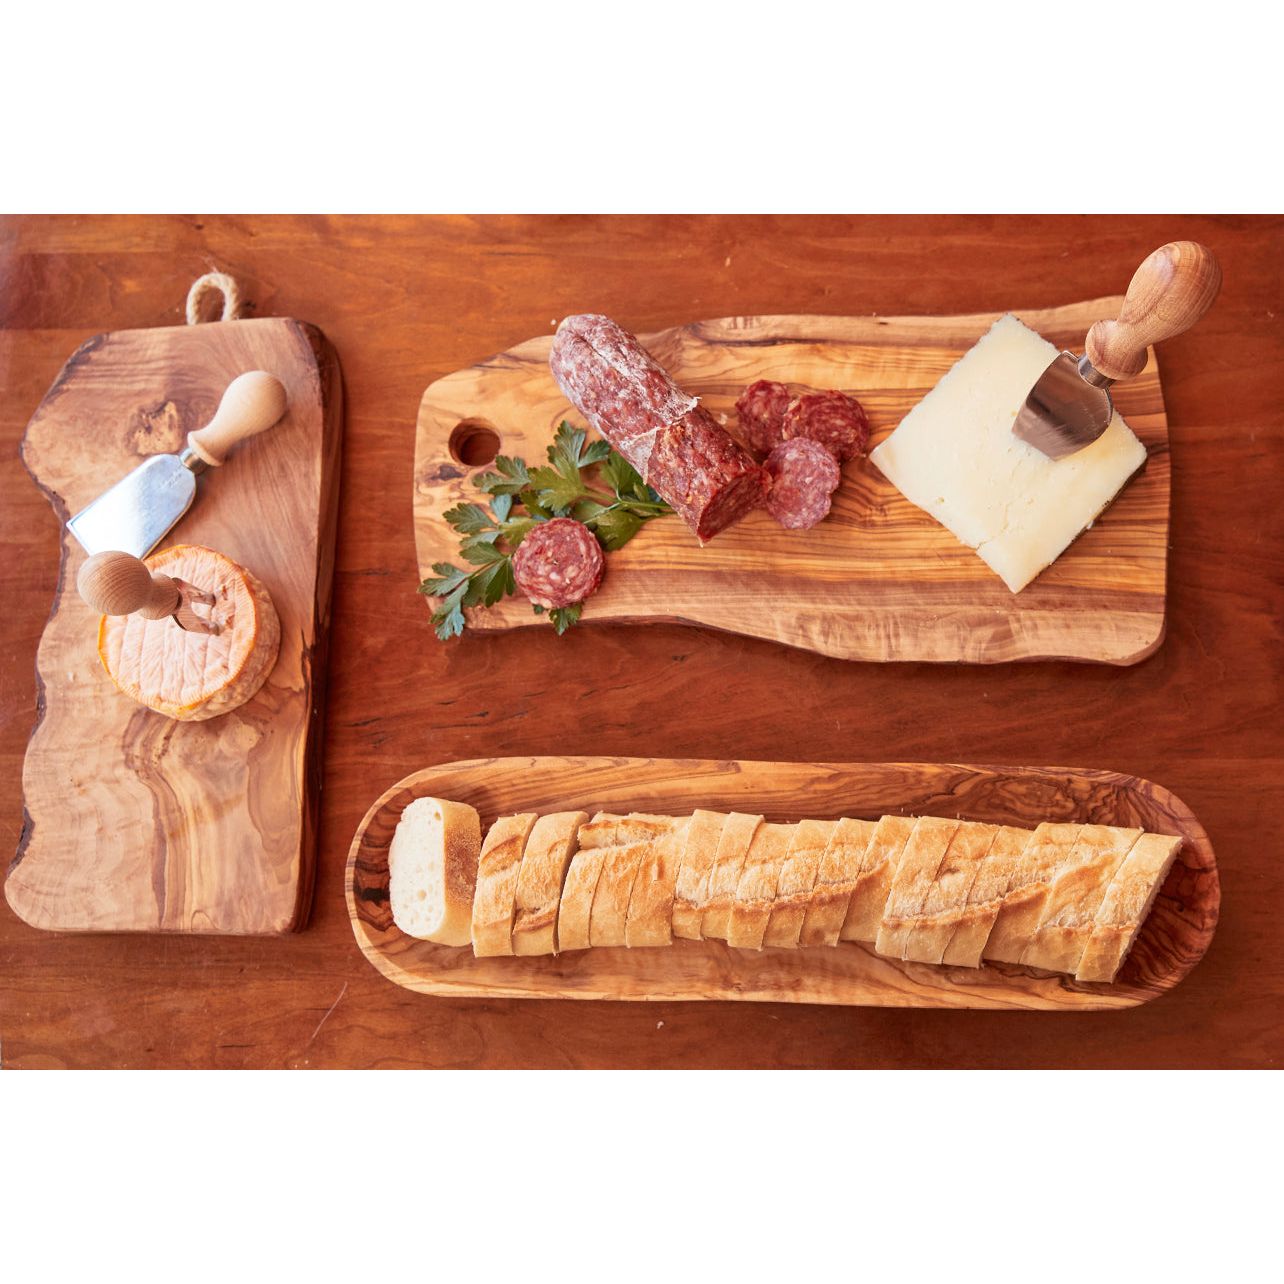 Italian Cheese Knives - Set of 3